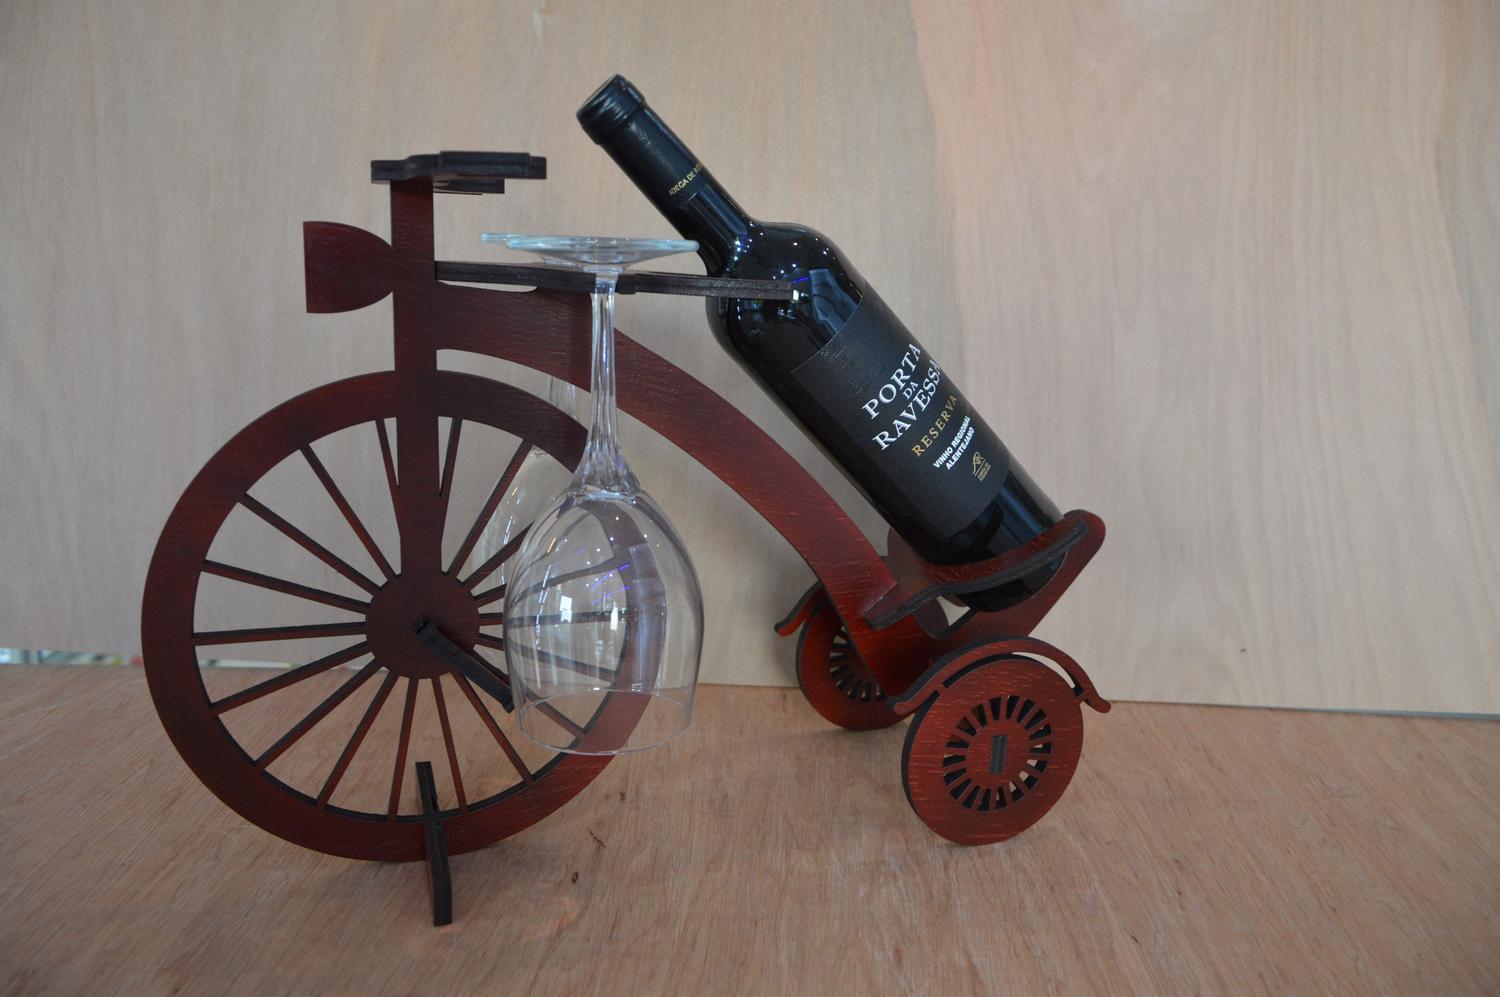 قالب برش لیزری قفسه نگهدارنده بطری شراب دوچرخه چوبی دکور